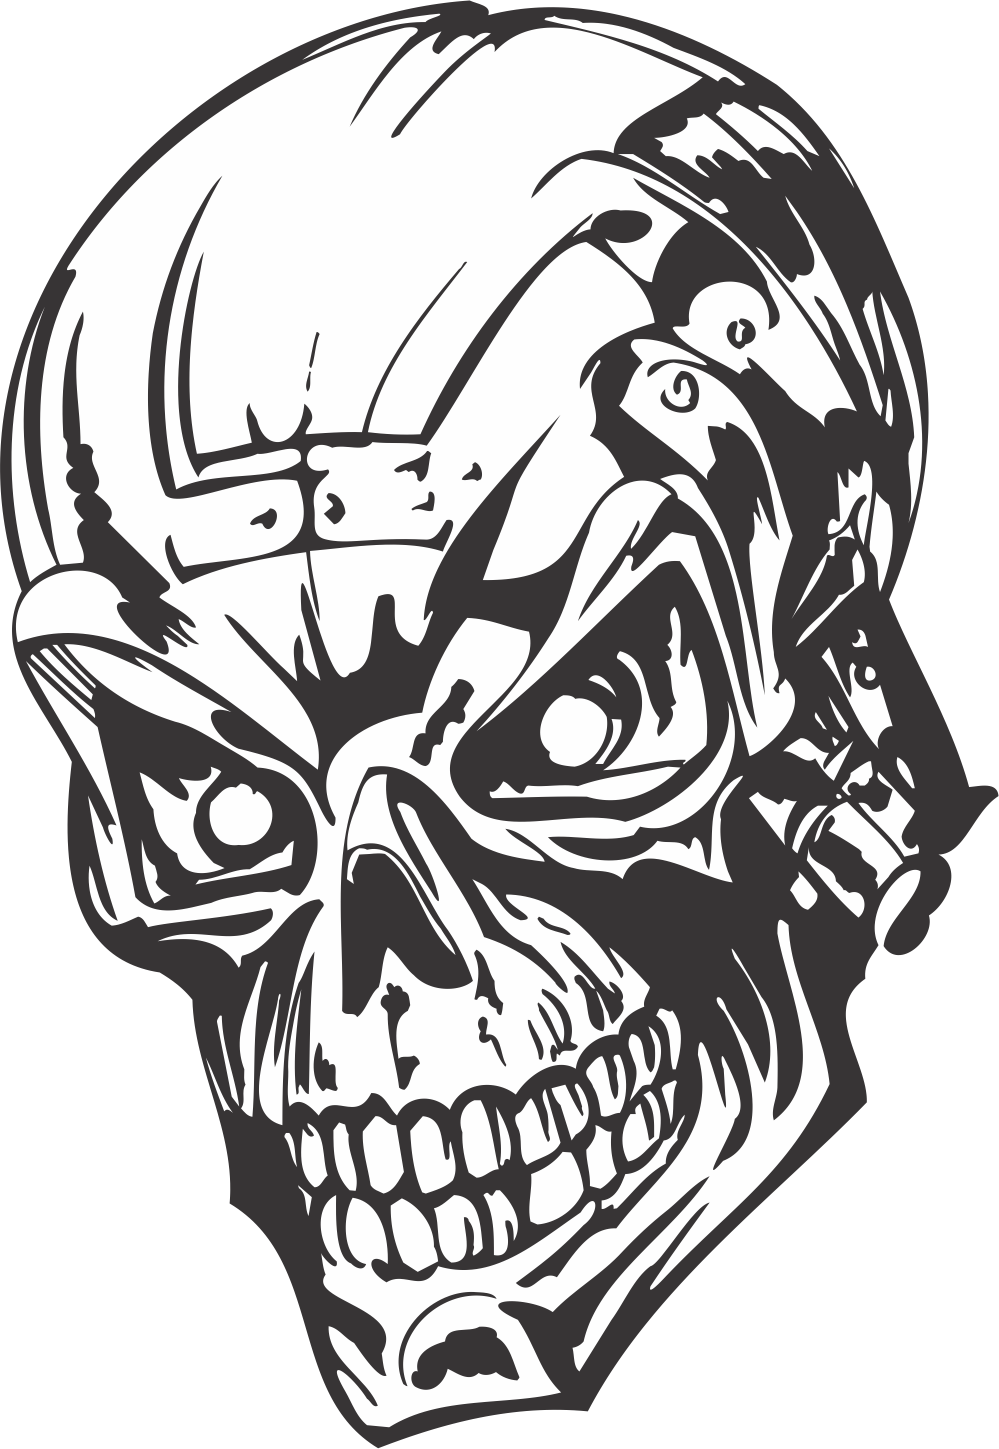 Human Evil Skull Free DXF File